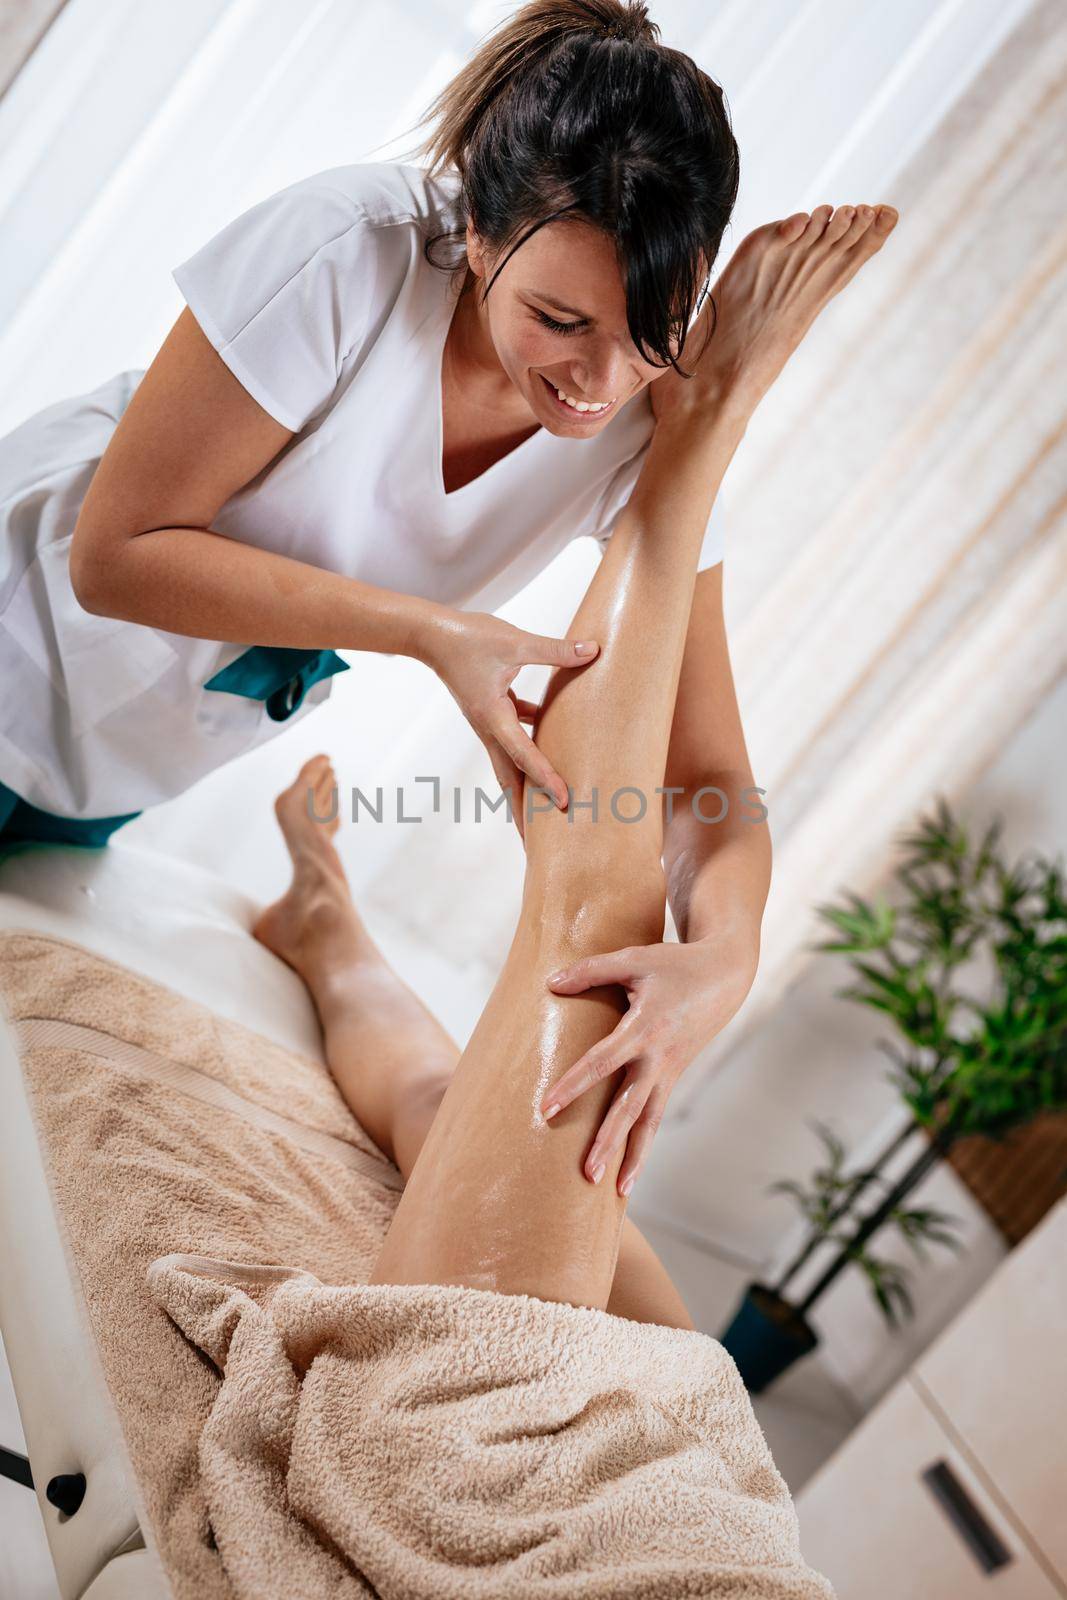 Beautiful smiling female therapist massaging young woman's leg at beauty salon. 